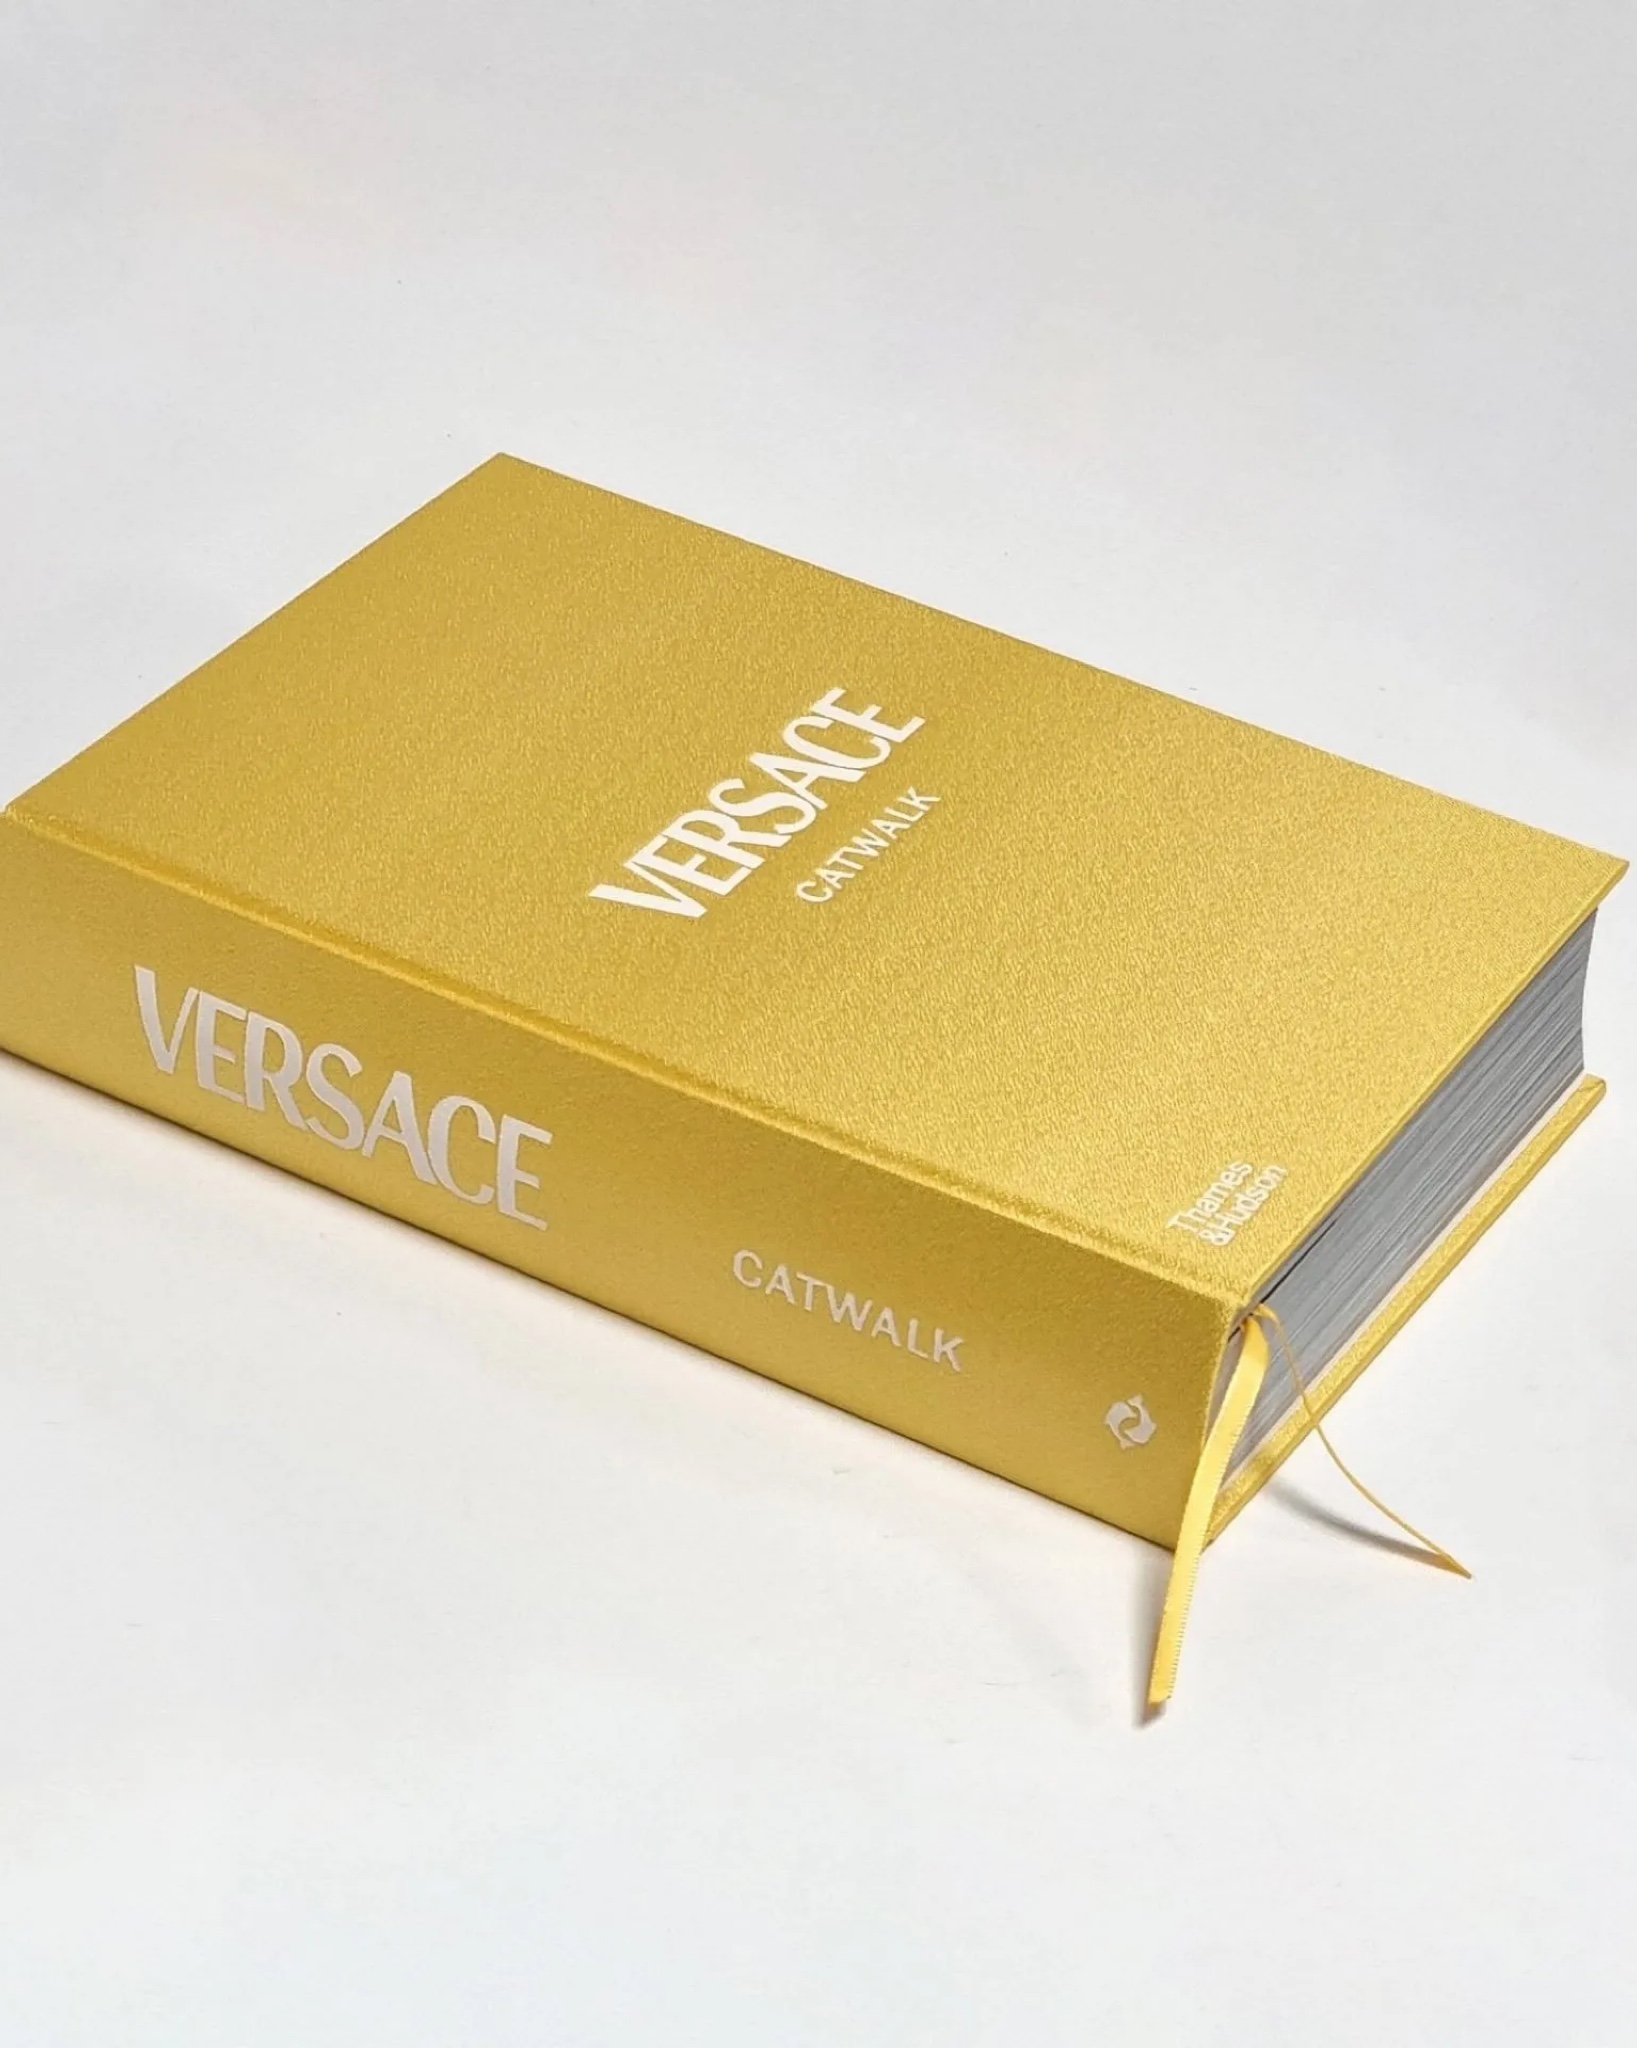 Versace Catwalk Book - Héas